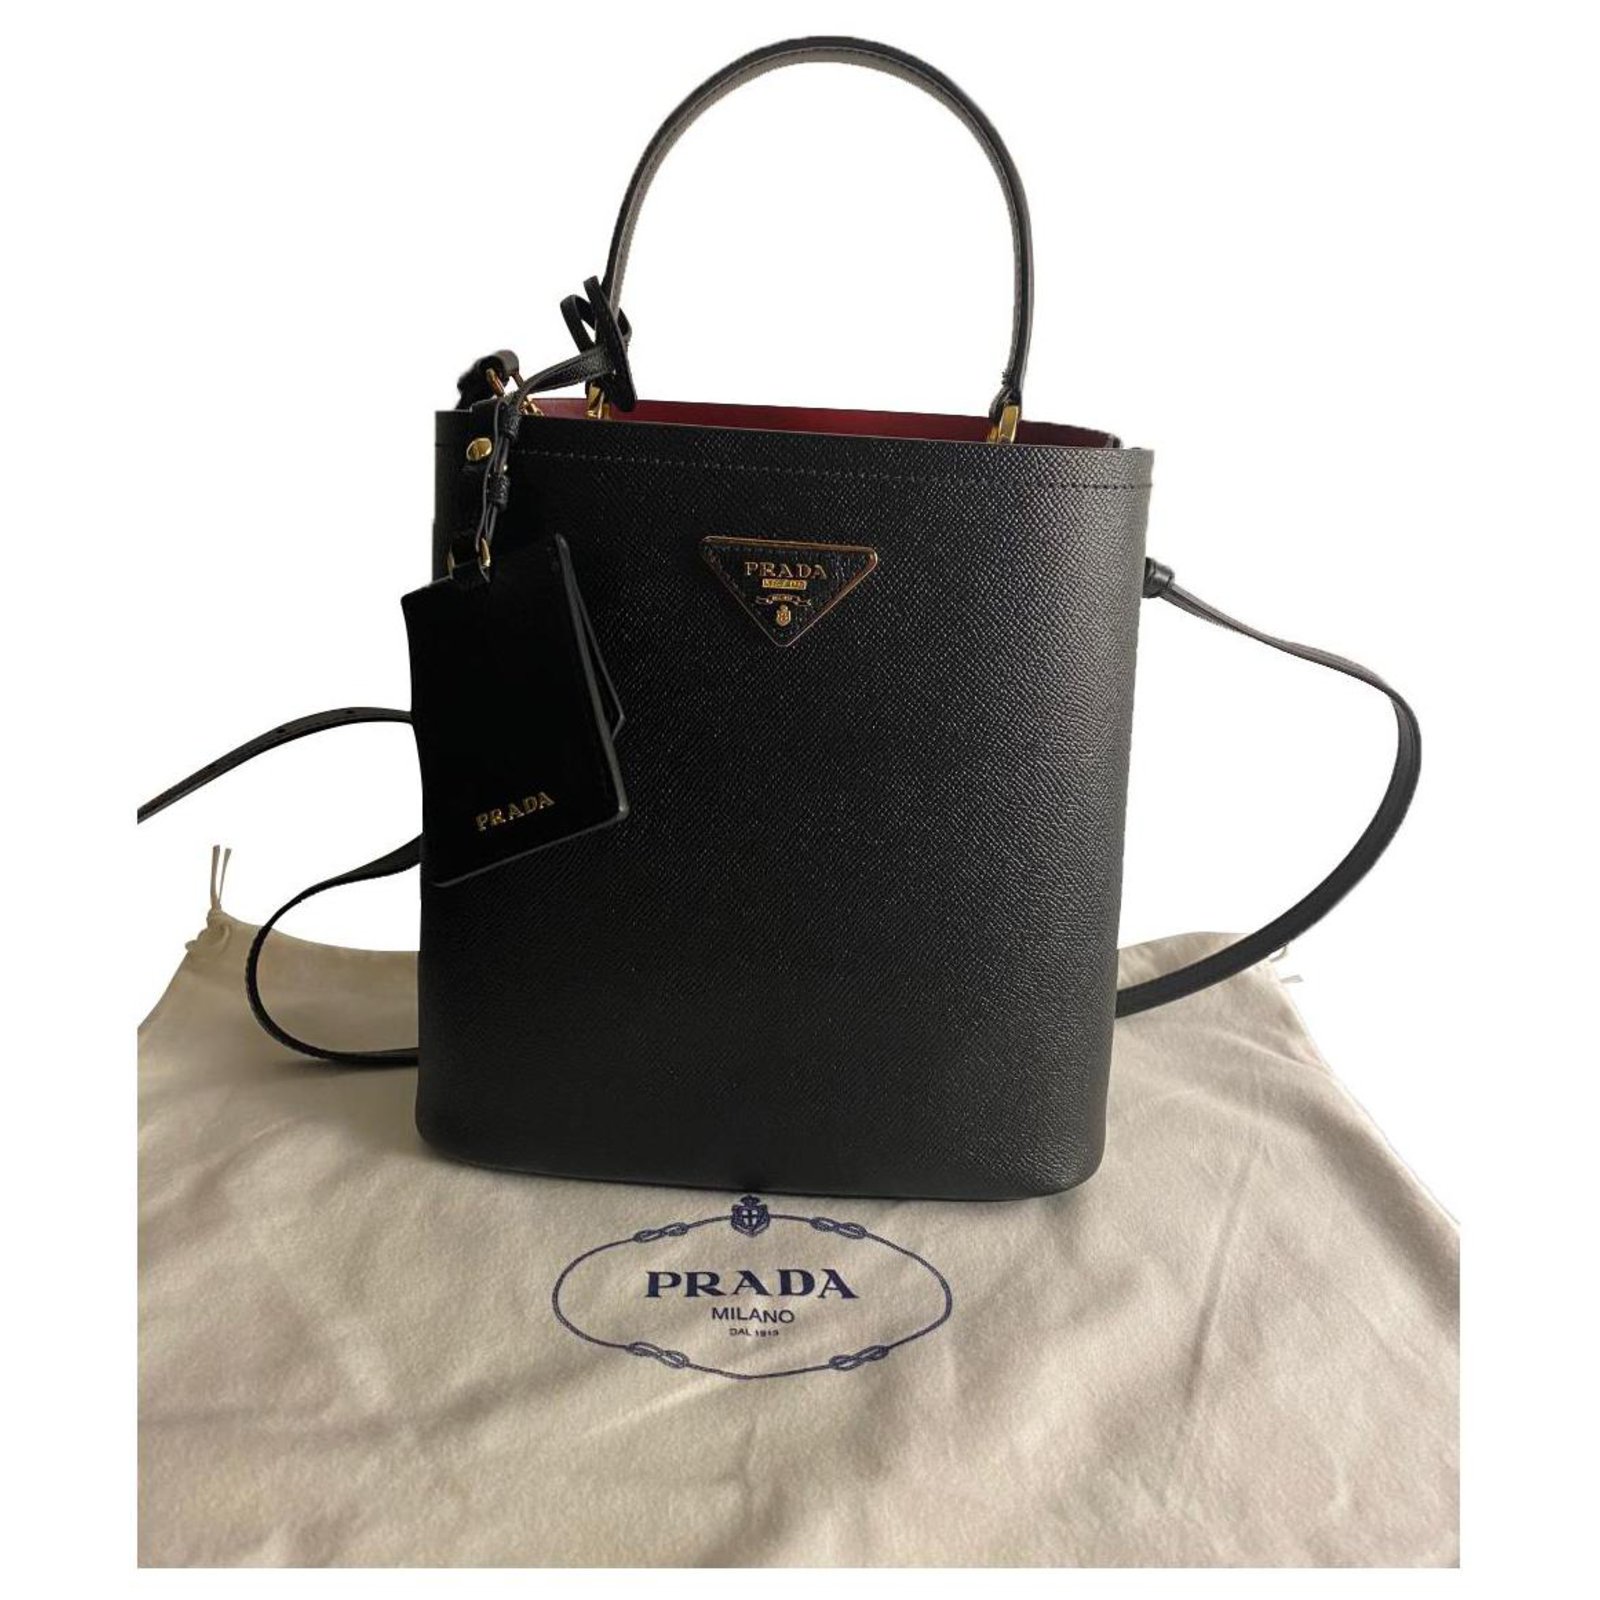 Prada Small Panier Saffiano Leather Bag